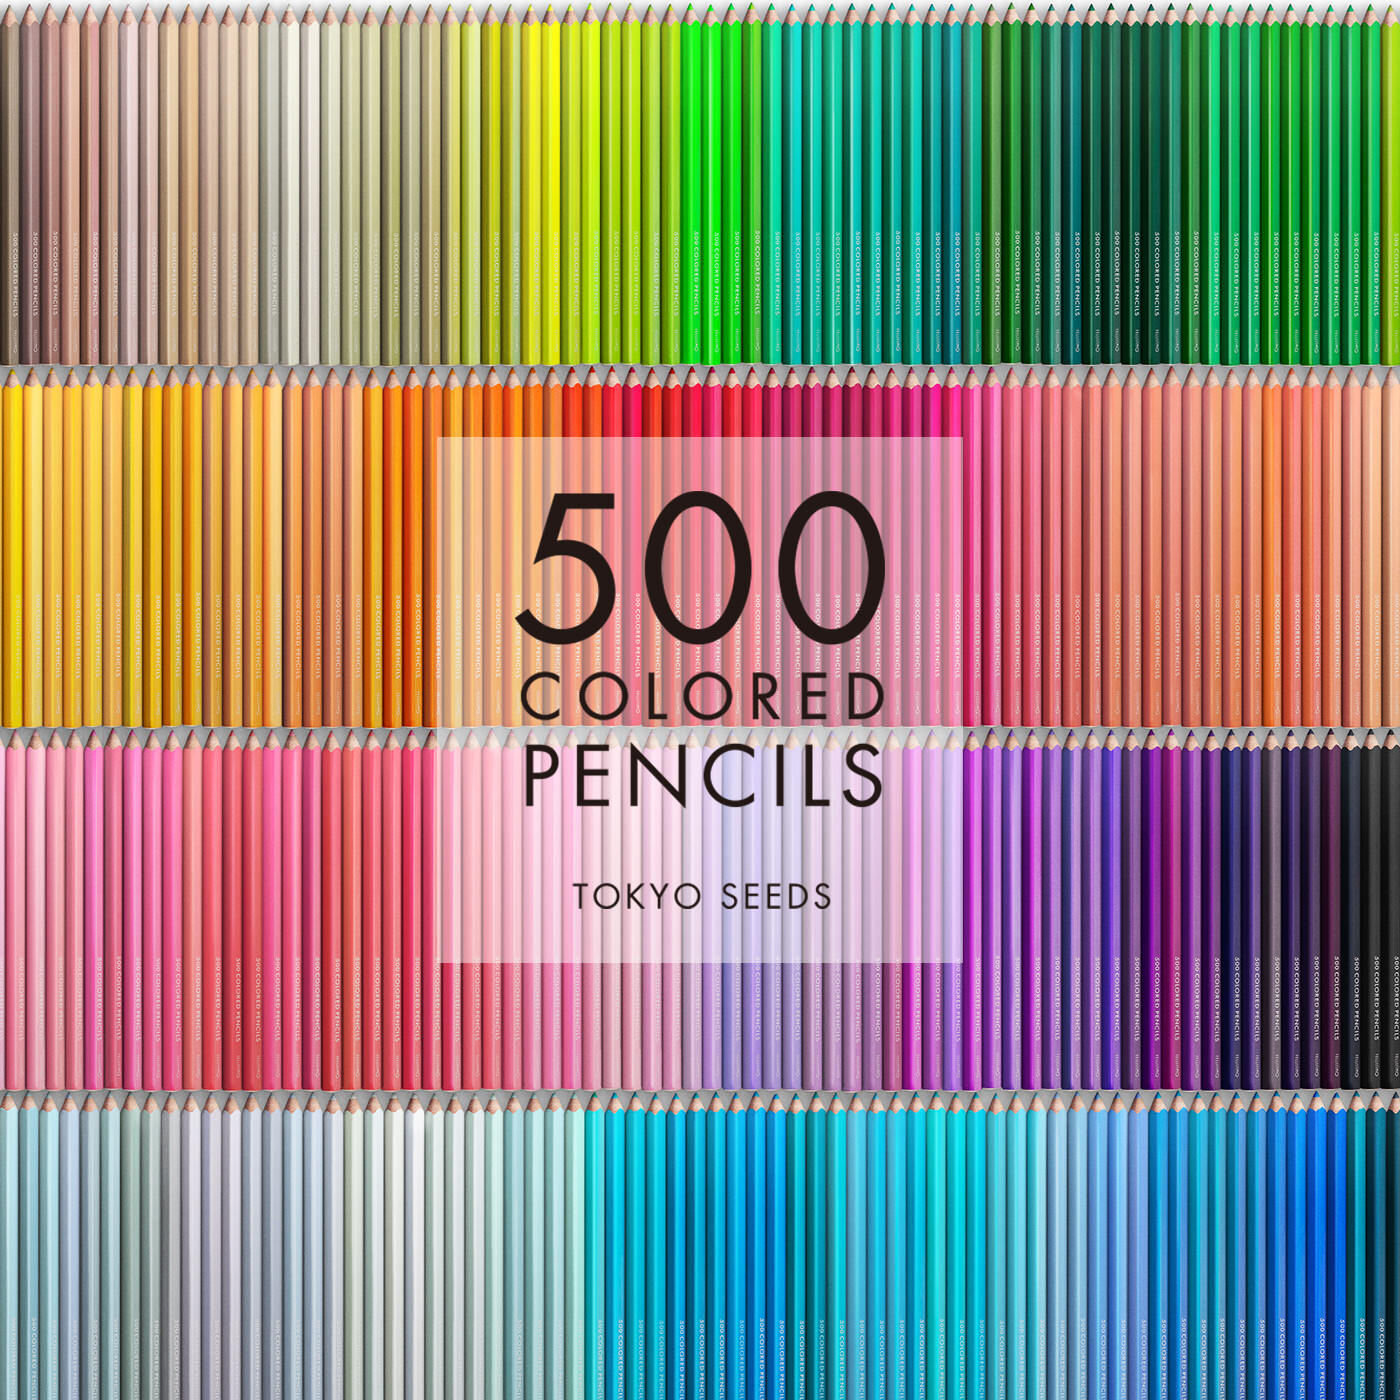 Real Stock|【282/500 LUSCIOUS LAWN】500色の色えんぴつ TOKYO SEEDS|1992年、世界初の「500色」という膨大な色数の色えんぴつが誕生して以来、その販売数は発売当初から合わせると、世界55ヵ国10万セット以上。今回、メイド・イン・ジャパンにこだわり、すべてが新しく生まれ変わって登場しました。